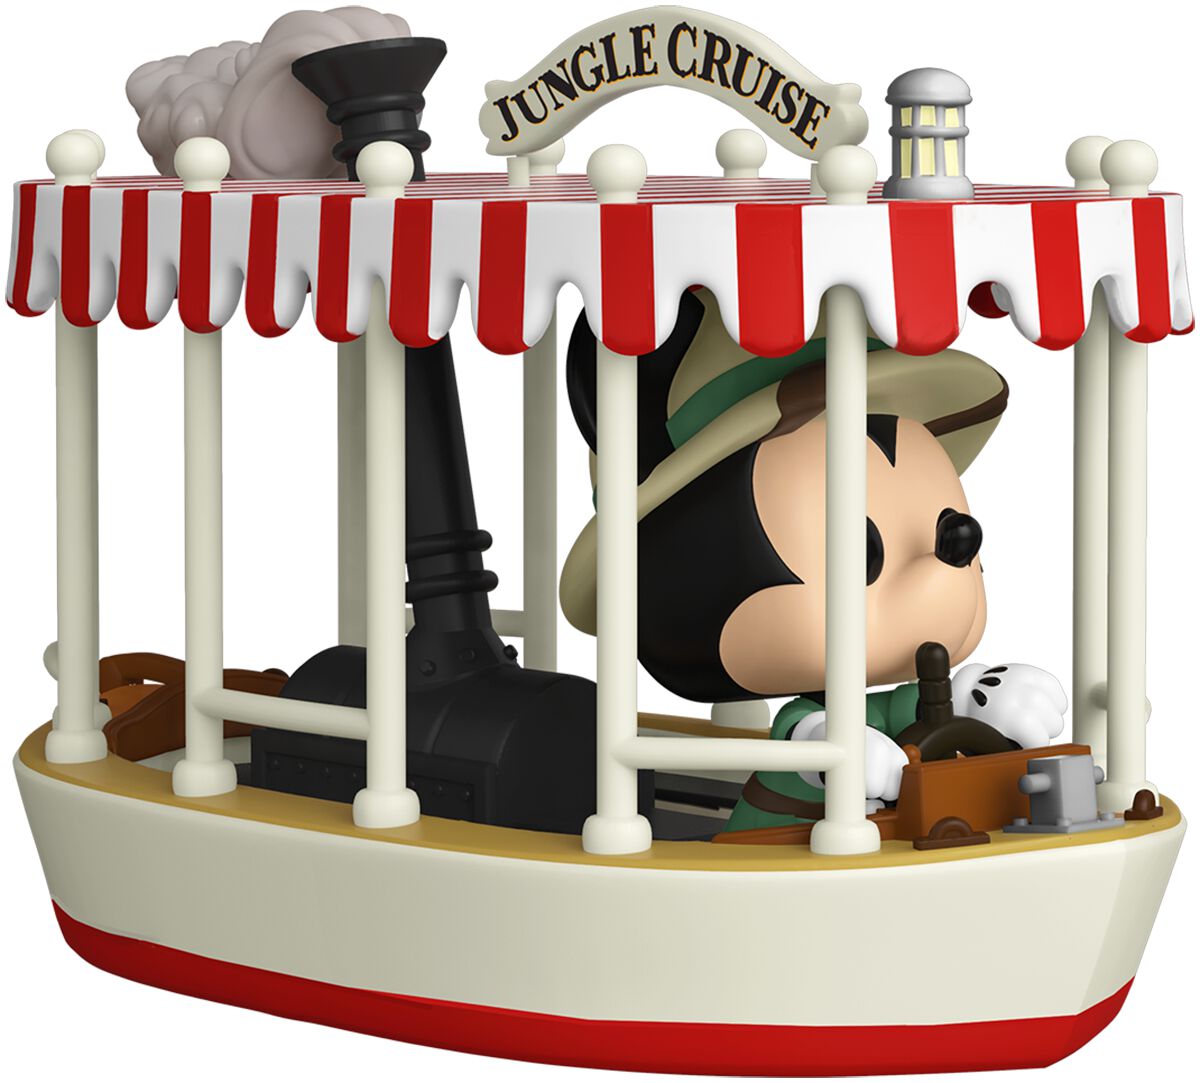 Disney Jungle Cruise: Skipper Mickey w/Boat Funko Pop! Rides